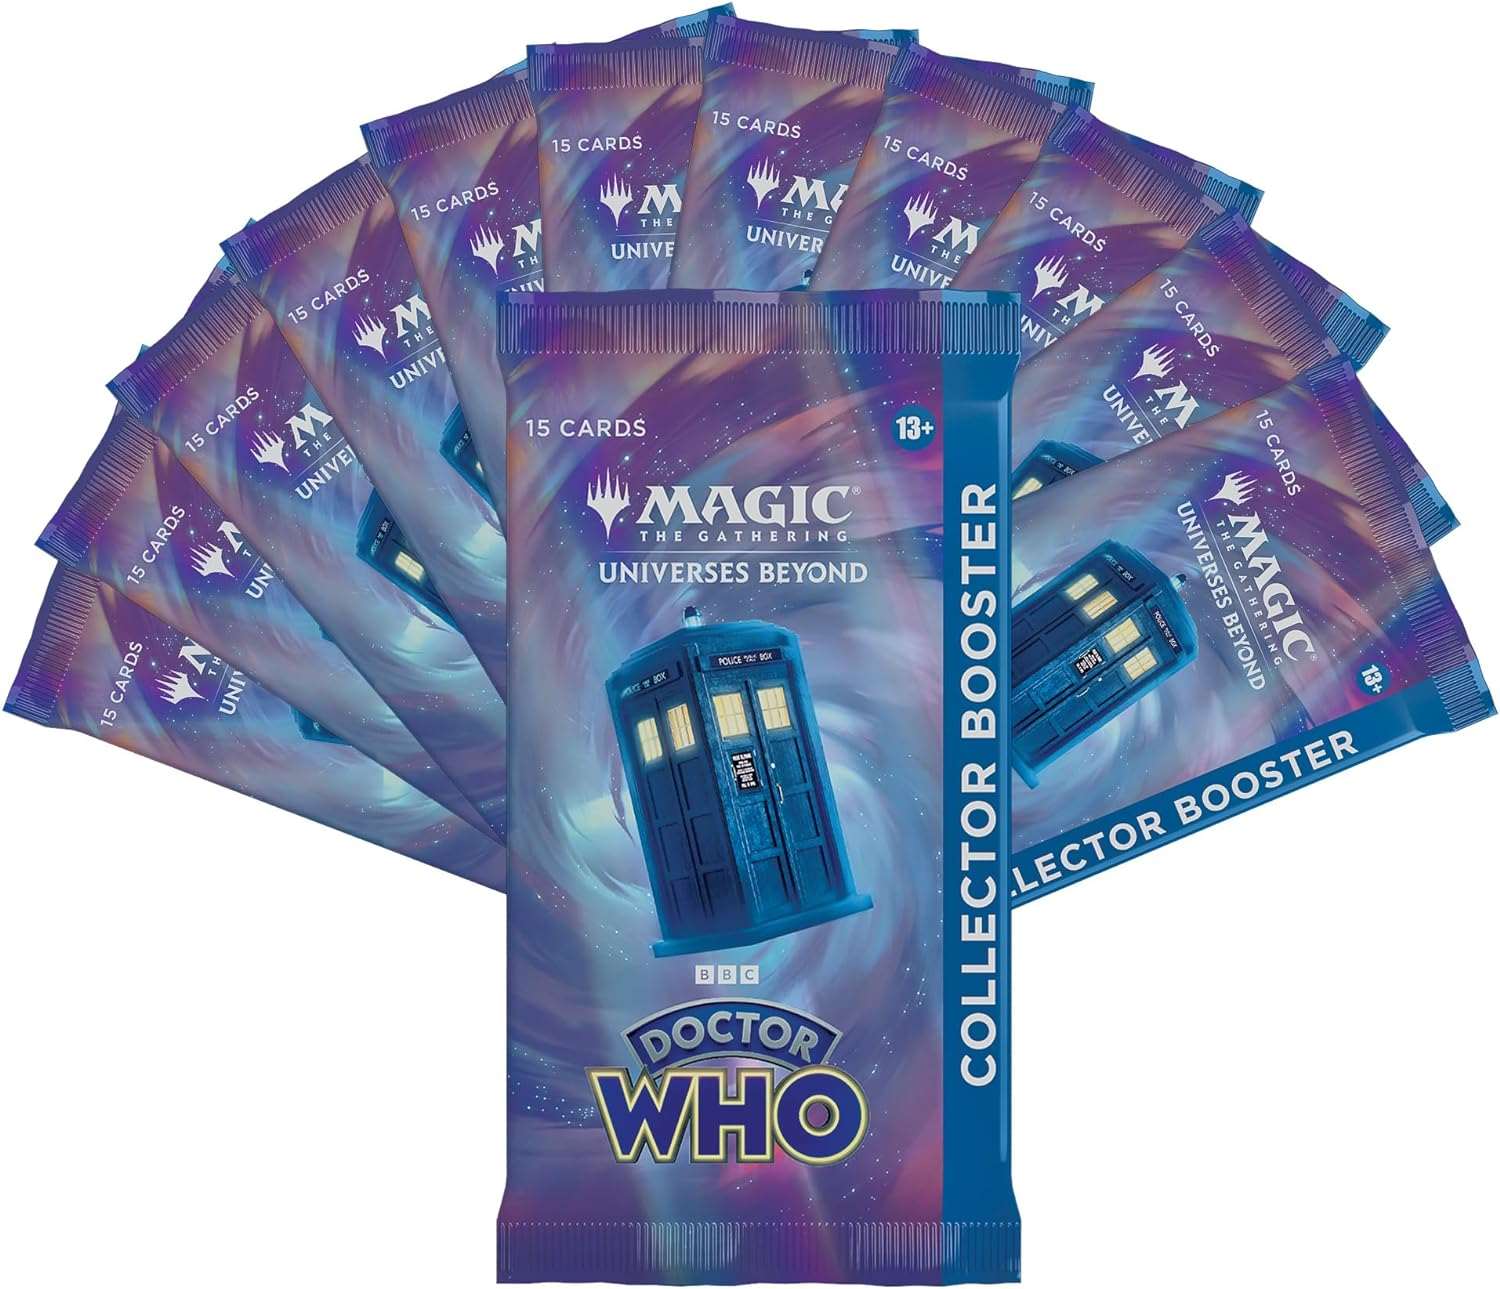 Magic: The Gathering, Doctor Who, Sammelkartenspiel, Kartenspiel, Collector Booster, Booster Box, selten, einzigartig, Charaktere, Schauplätze, Deck, Spiel, Sammeln, Weihnachten, Geburtstag, Geschenk